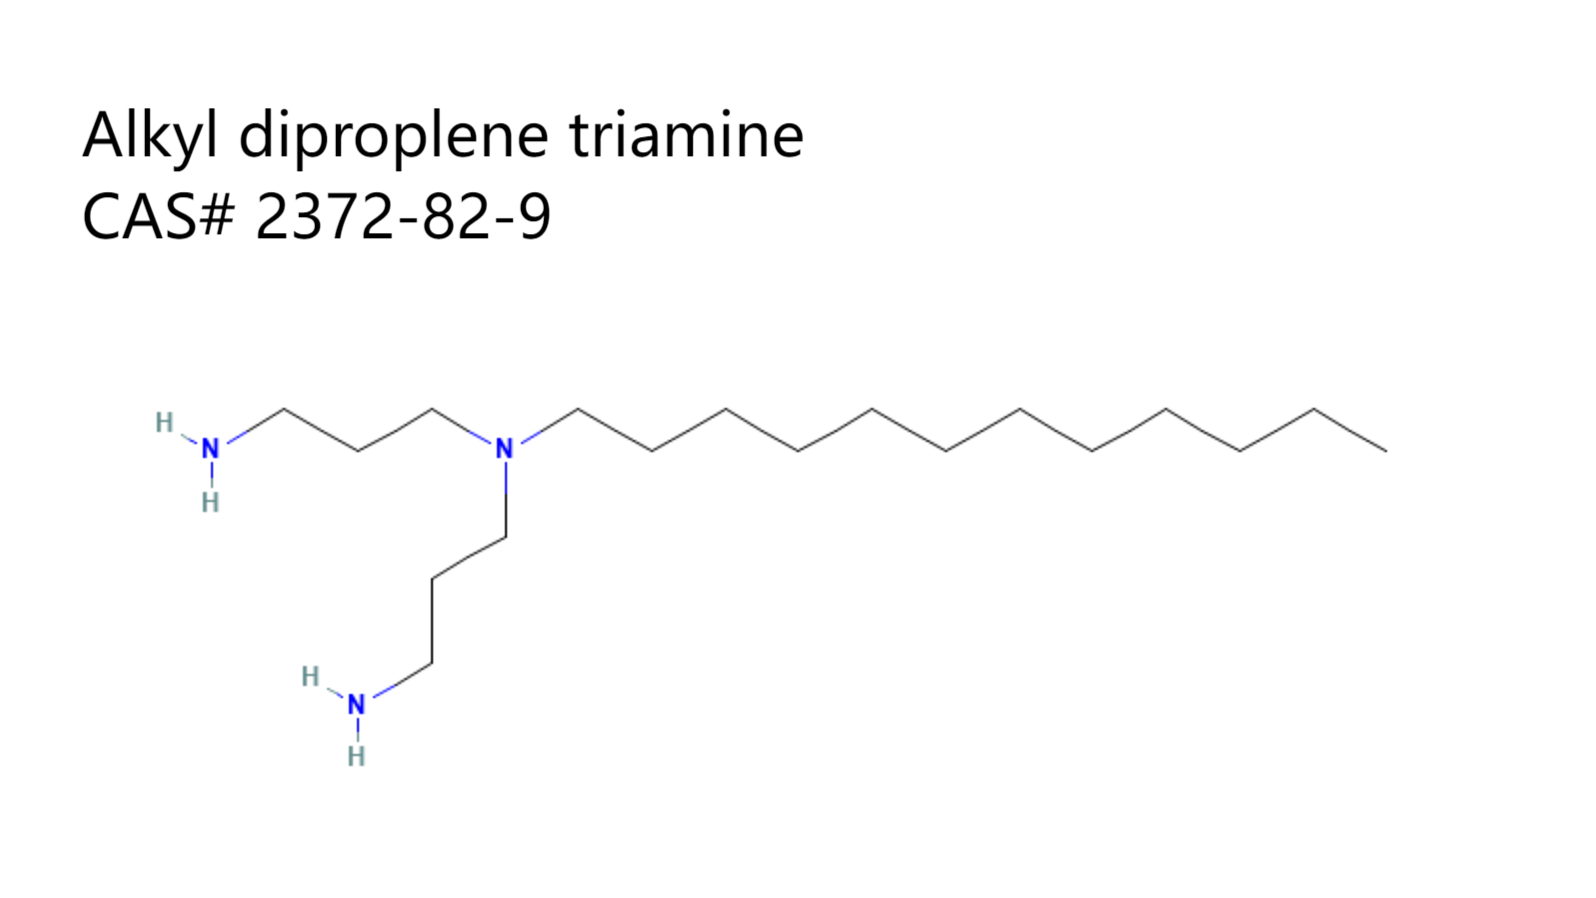 Alkyl diproplene triamine-structure